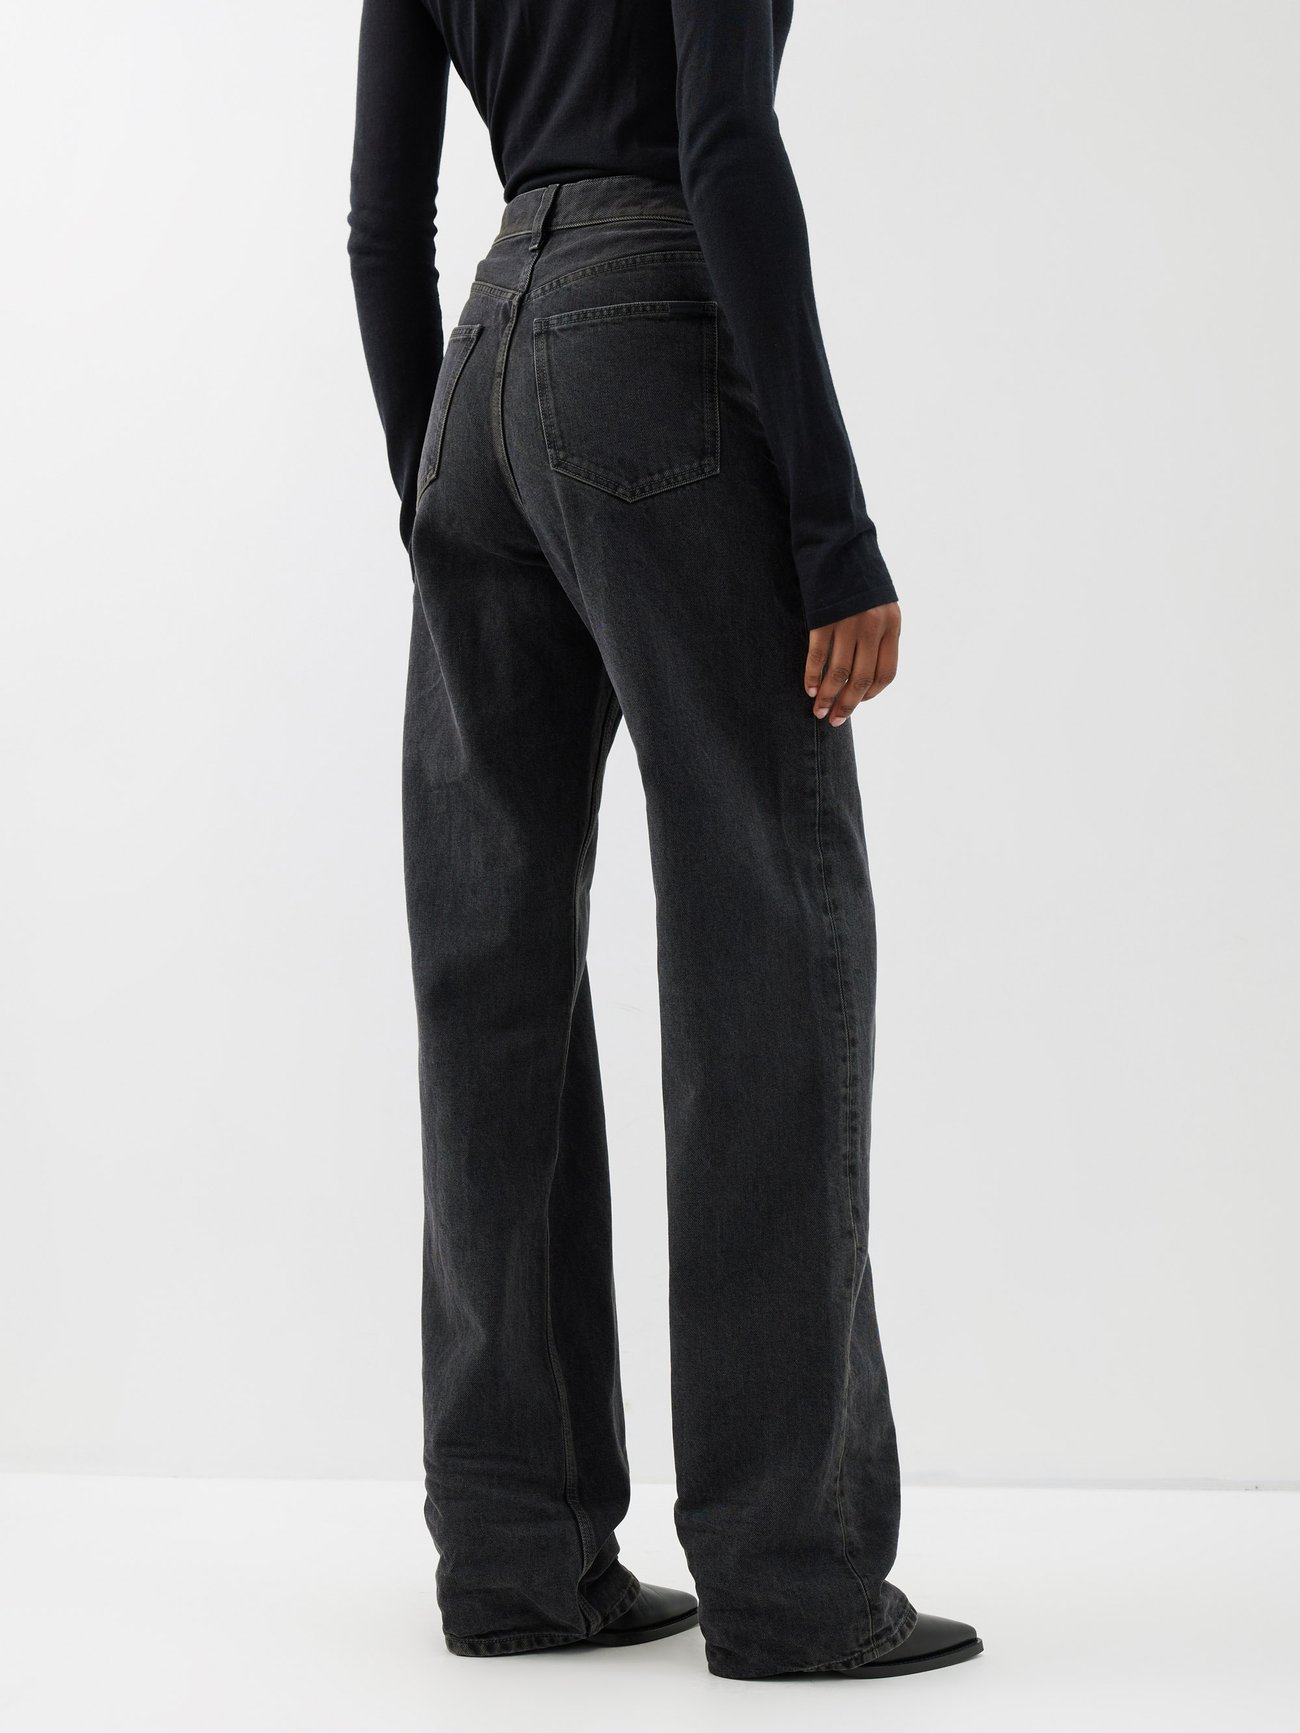 Black Carlton high-rise bootcut jeans, The Row